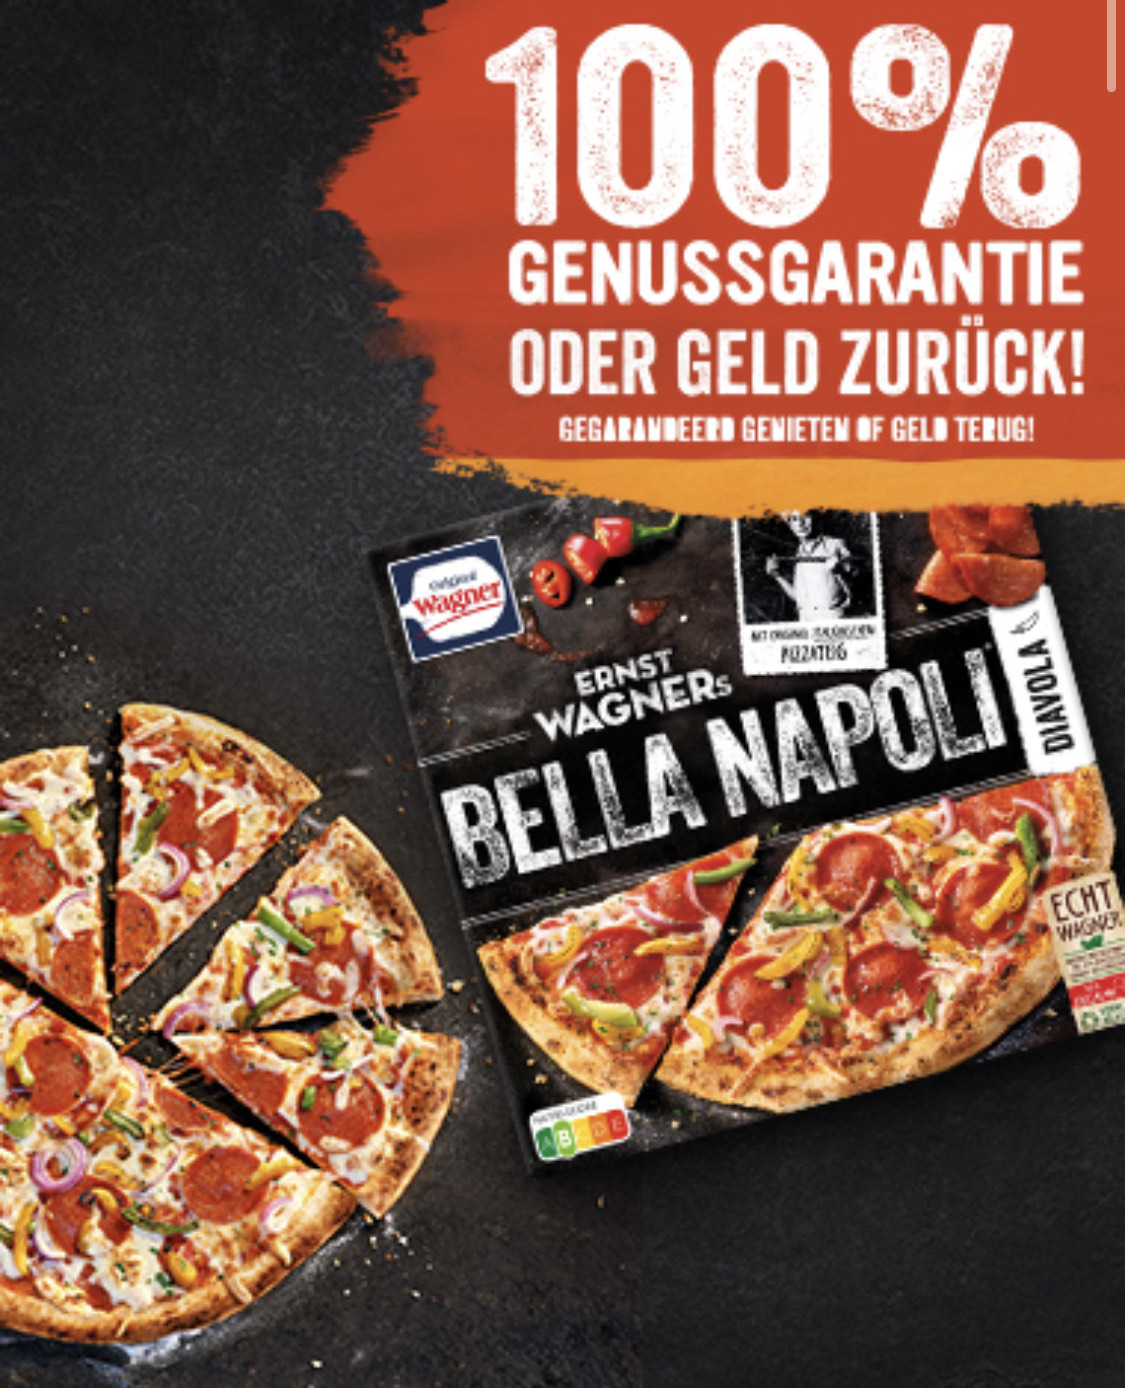 [GzG] Wagner Pizza Bella Napoli Genussgarantie oder Geld zurück ab 16.